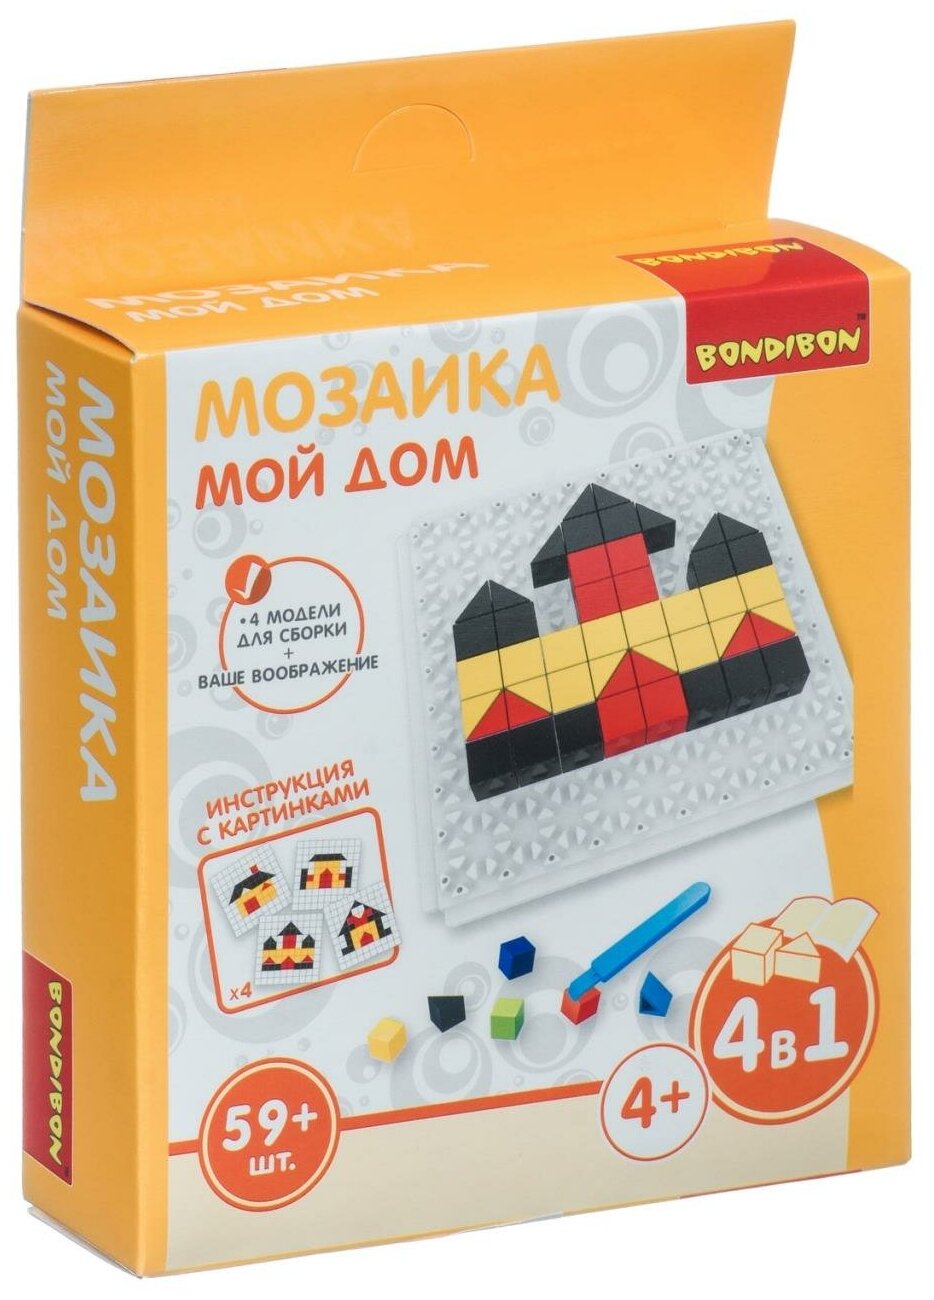 Логические, развивающие игры и игрушки Bondibon Мозаика "МОЙ ДОМ", 59 дет, BOX 13x3,5x14 см